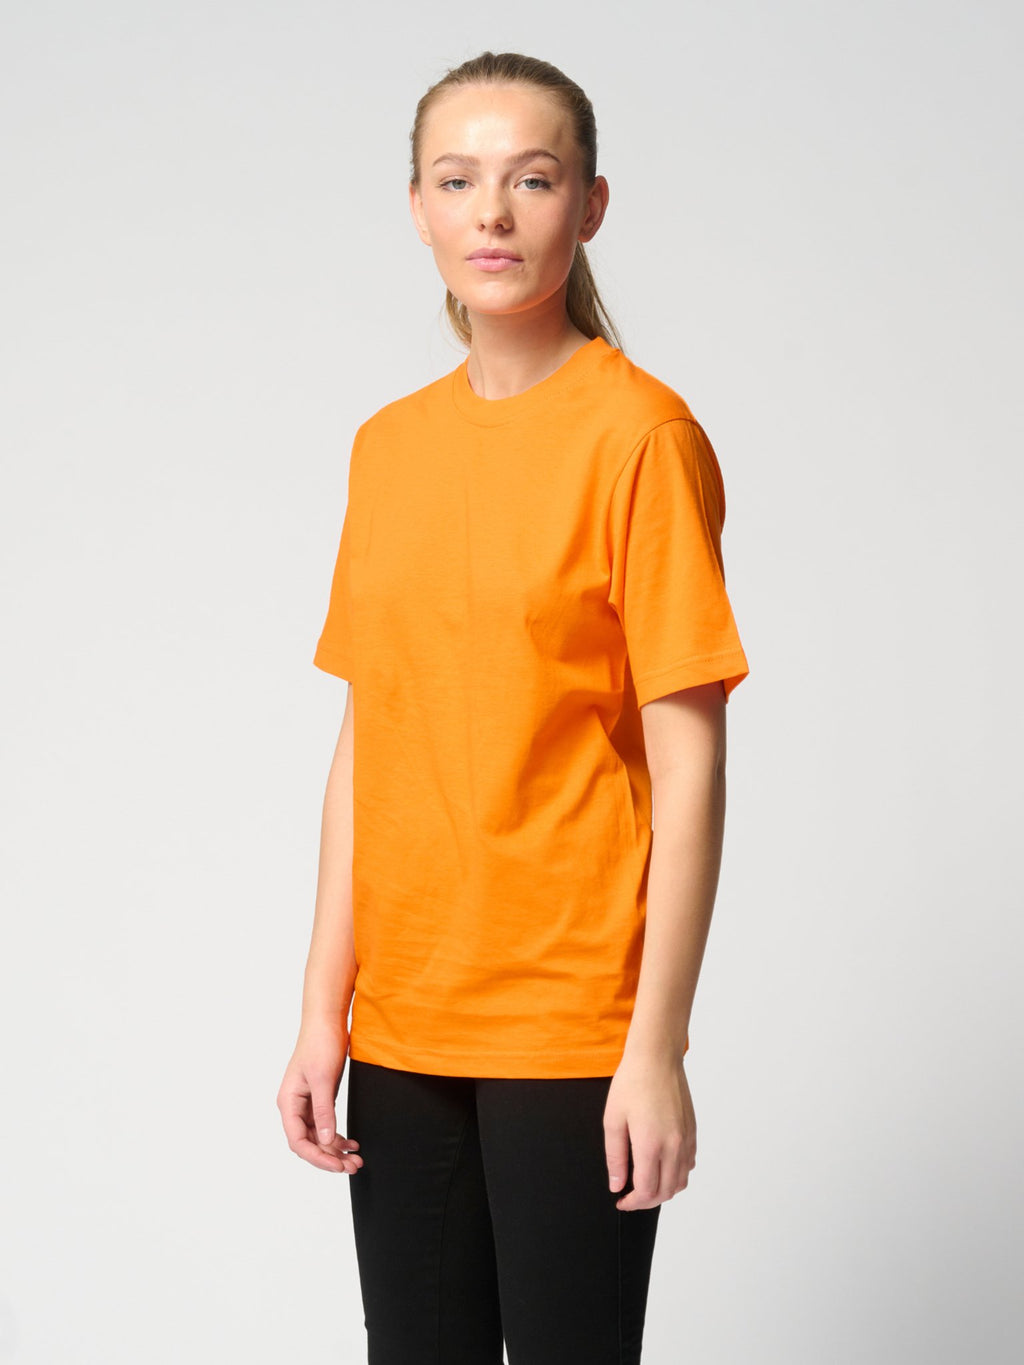 Υπερμεγέθη μπλουζάκι - πορτοκαλί